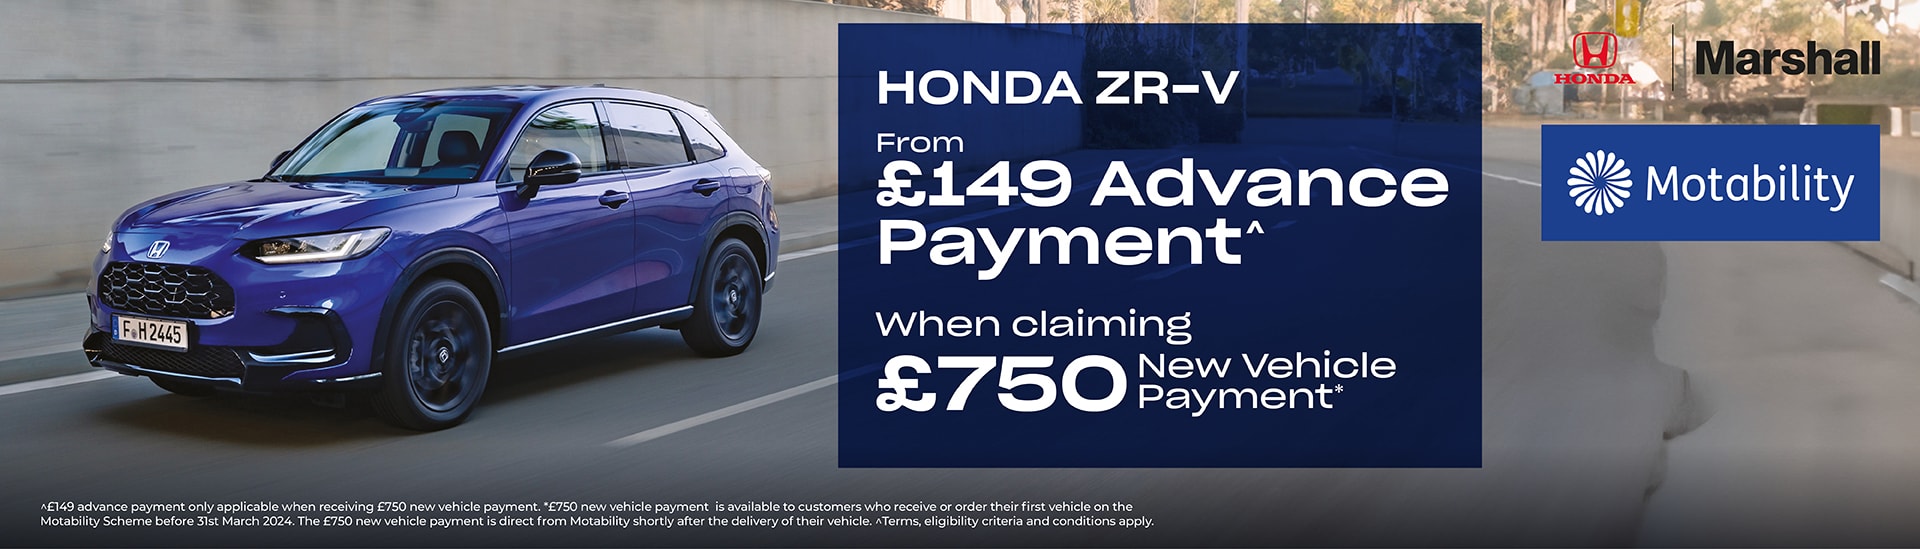 Honda ZR-V Motability Offer